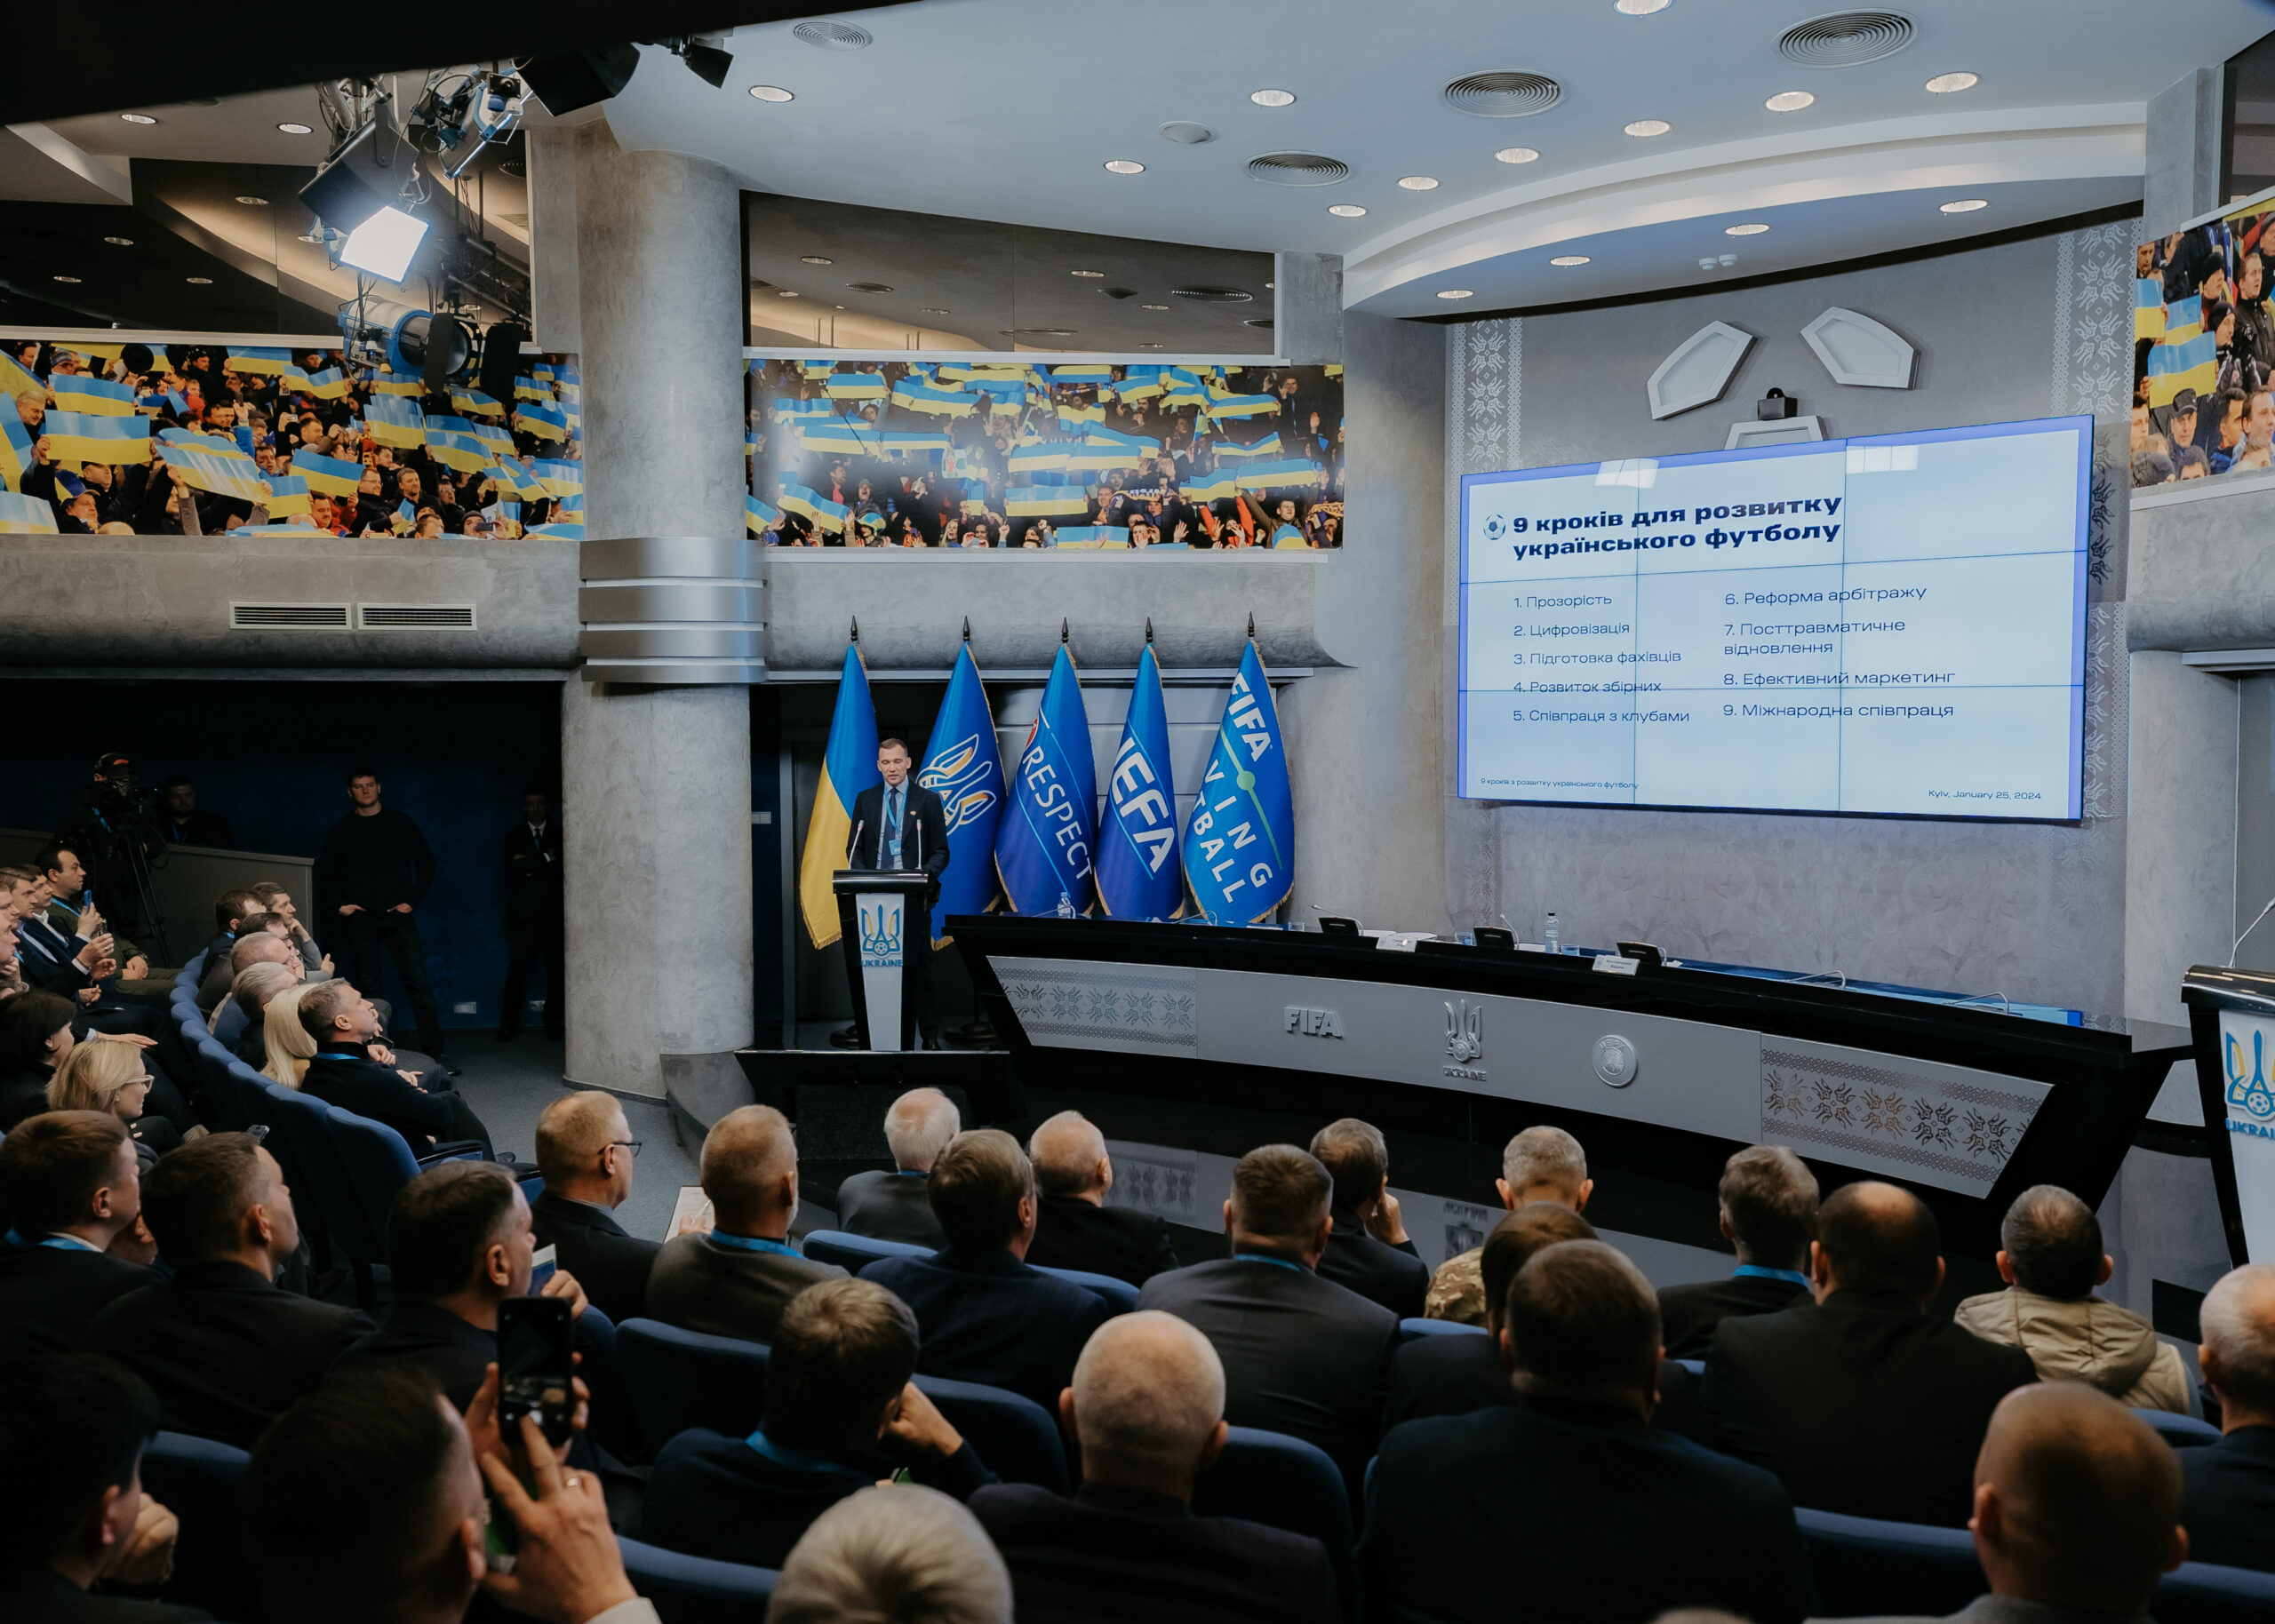 Презентація програми розвитку українського футболу